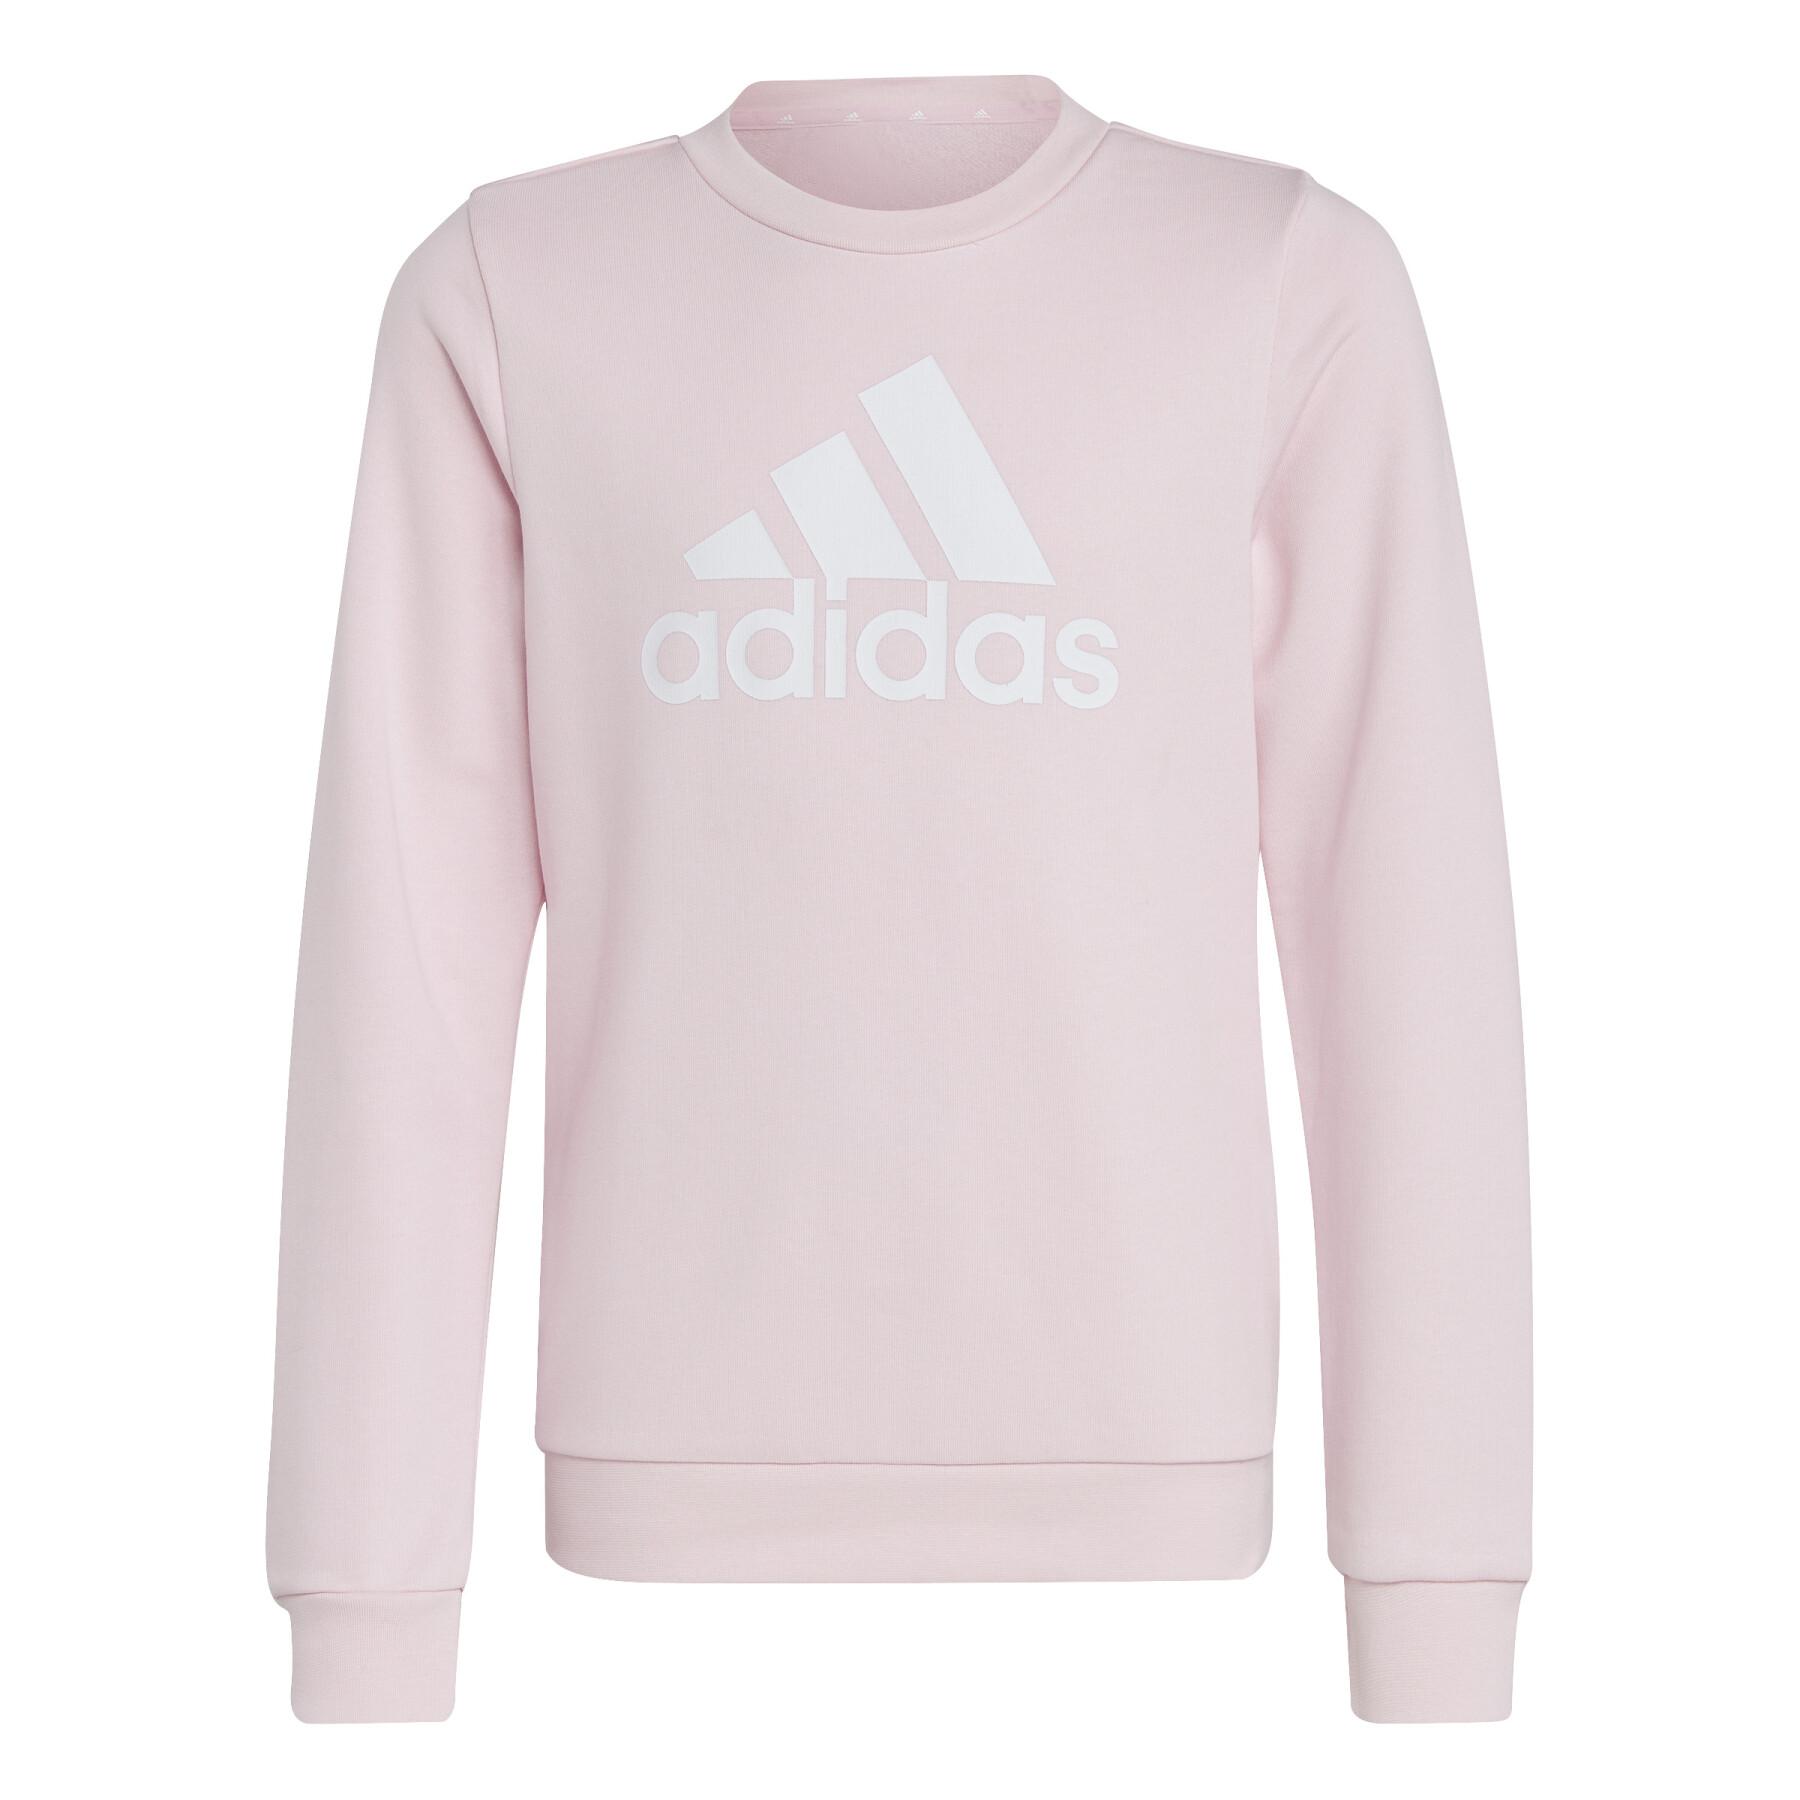 adidas Big Logo Sweat Top - Girls - Clear Pink/White